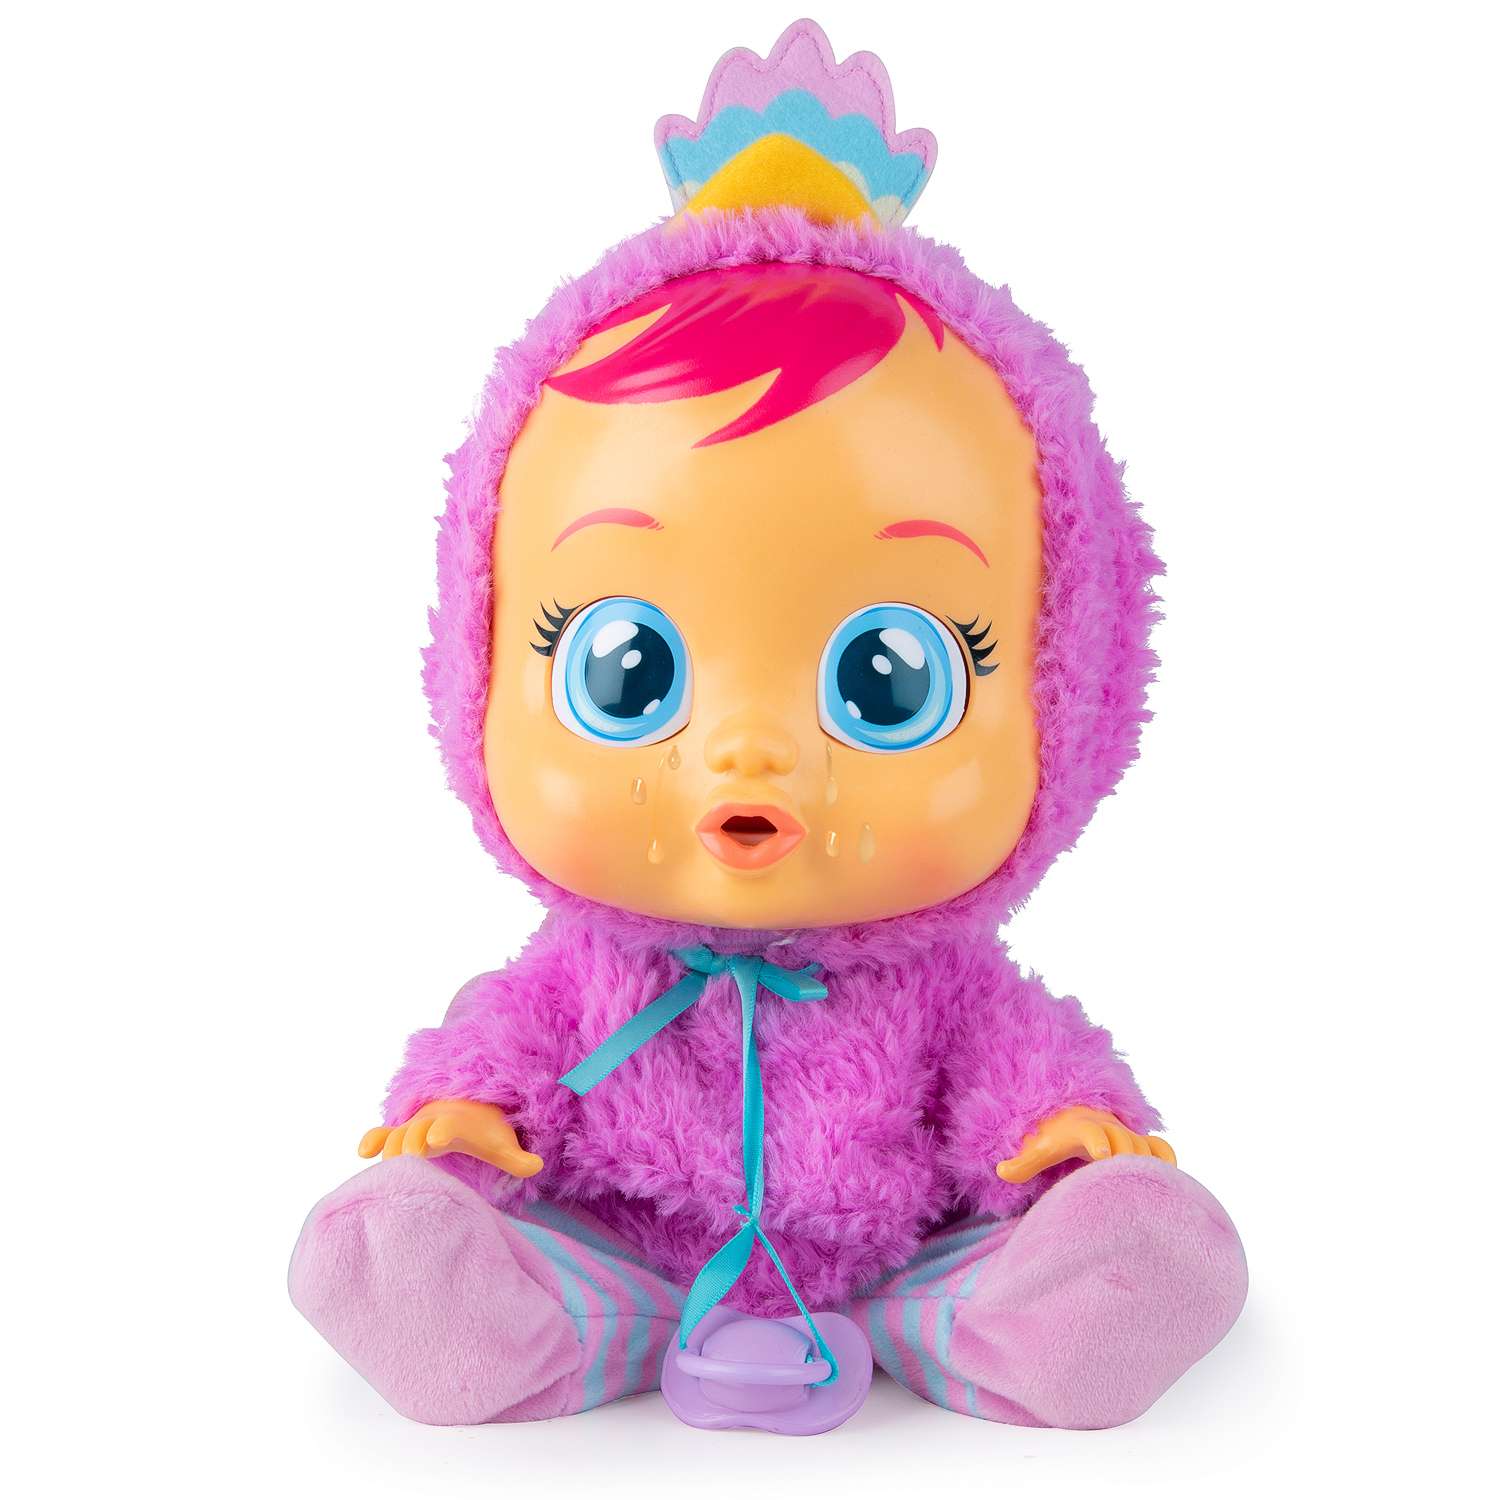 Кукла IMC Toys Плачущий младенец Lizzy 31 см 91665-IN - фото 1